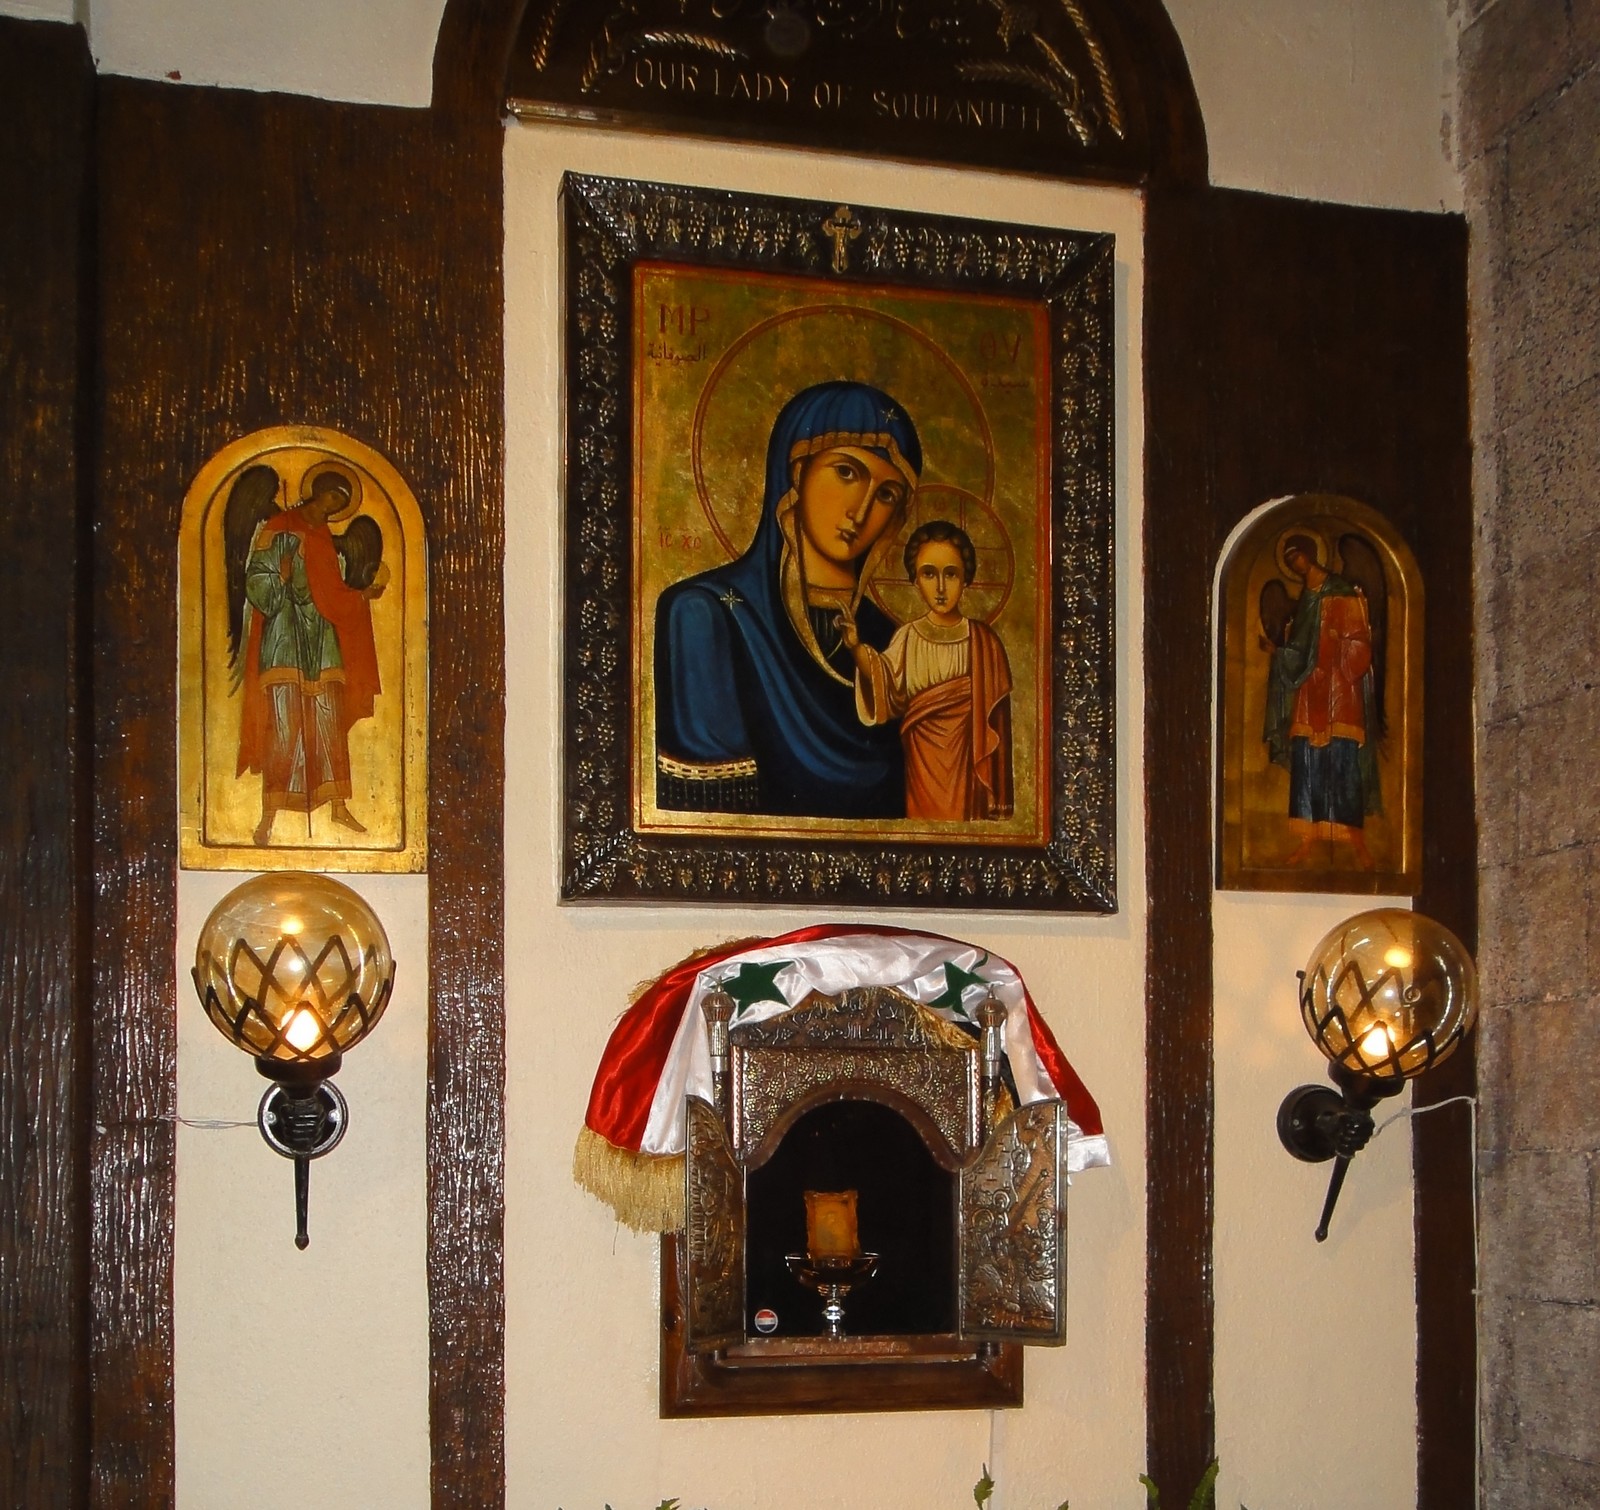 Nuestra Señora de Soufanieh, una Aparición Ecuménica, Siria (22 nov)